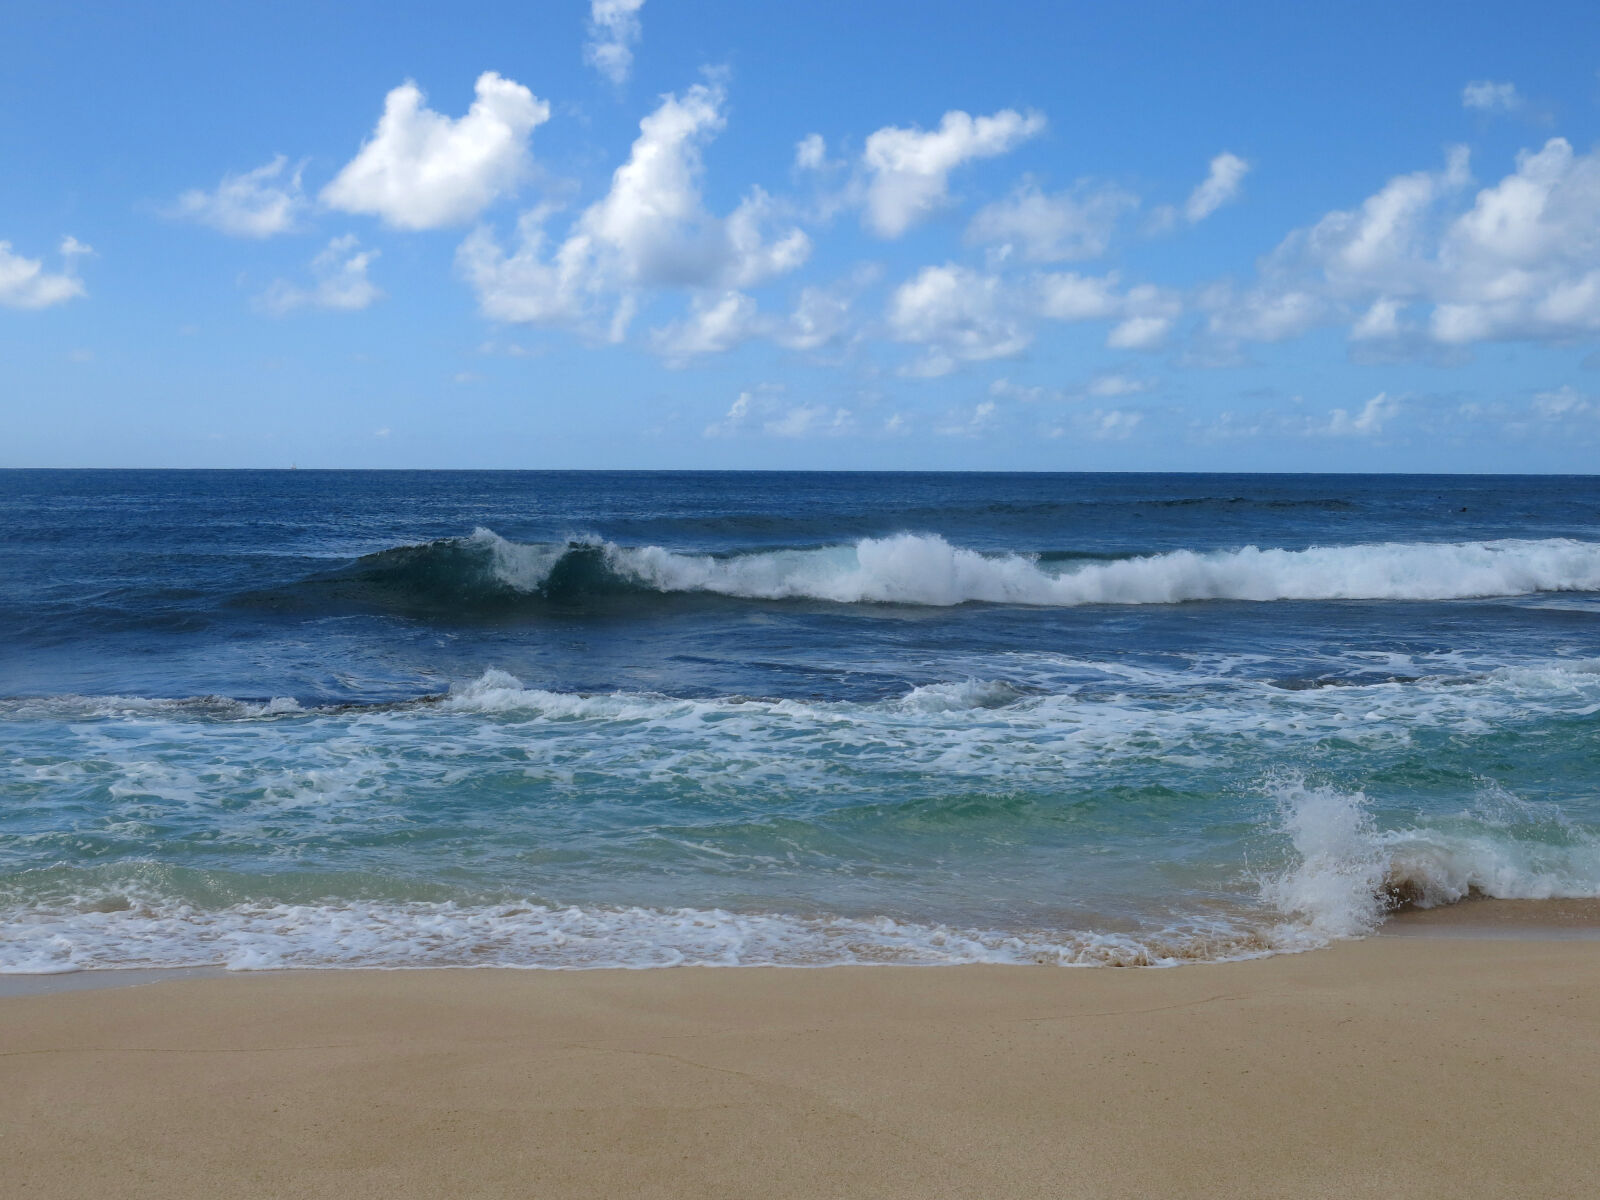 Canon PowerShot G15 sample photo. Beach, ocean, sand, beach photography